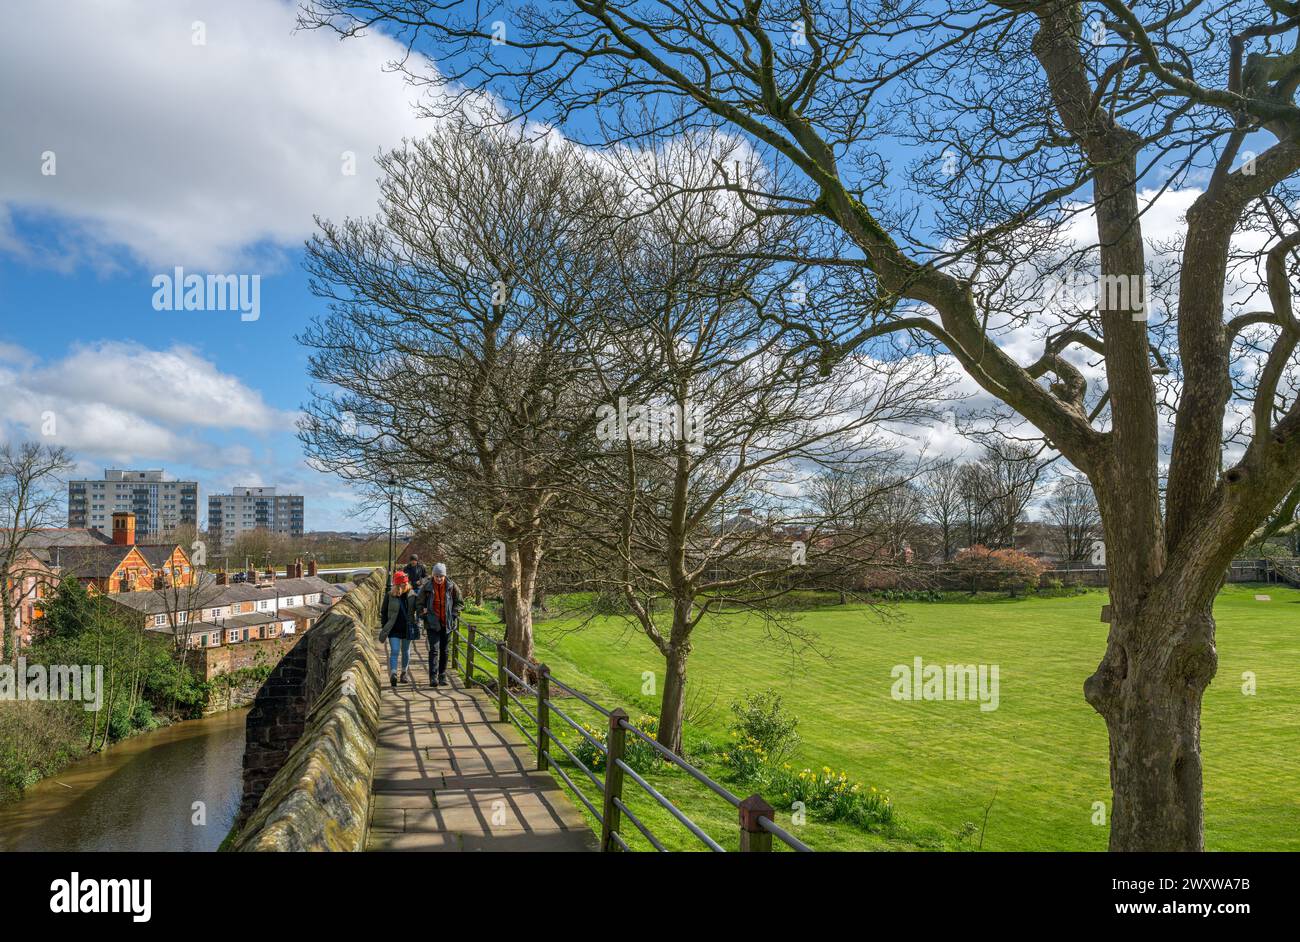 Gehen Sie entlang der Stadtmauer von Chester in der Nähe der King Charles Tower Gardens mit dem Shropshire Union Canal auf der linken Seite, Chester, Cheshire, England, Großbritannien Stockfoto